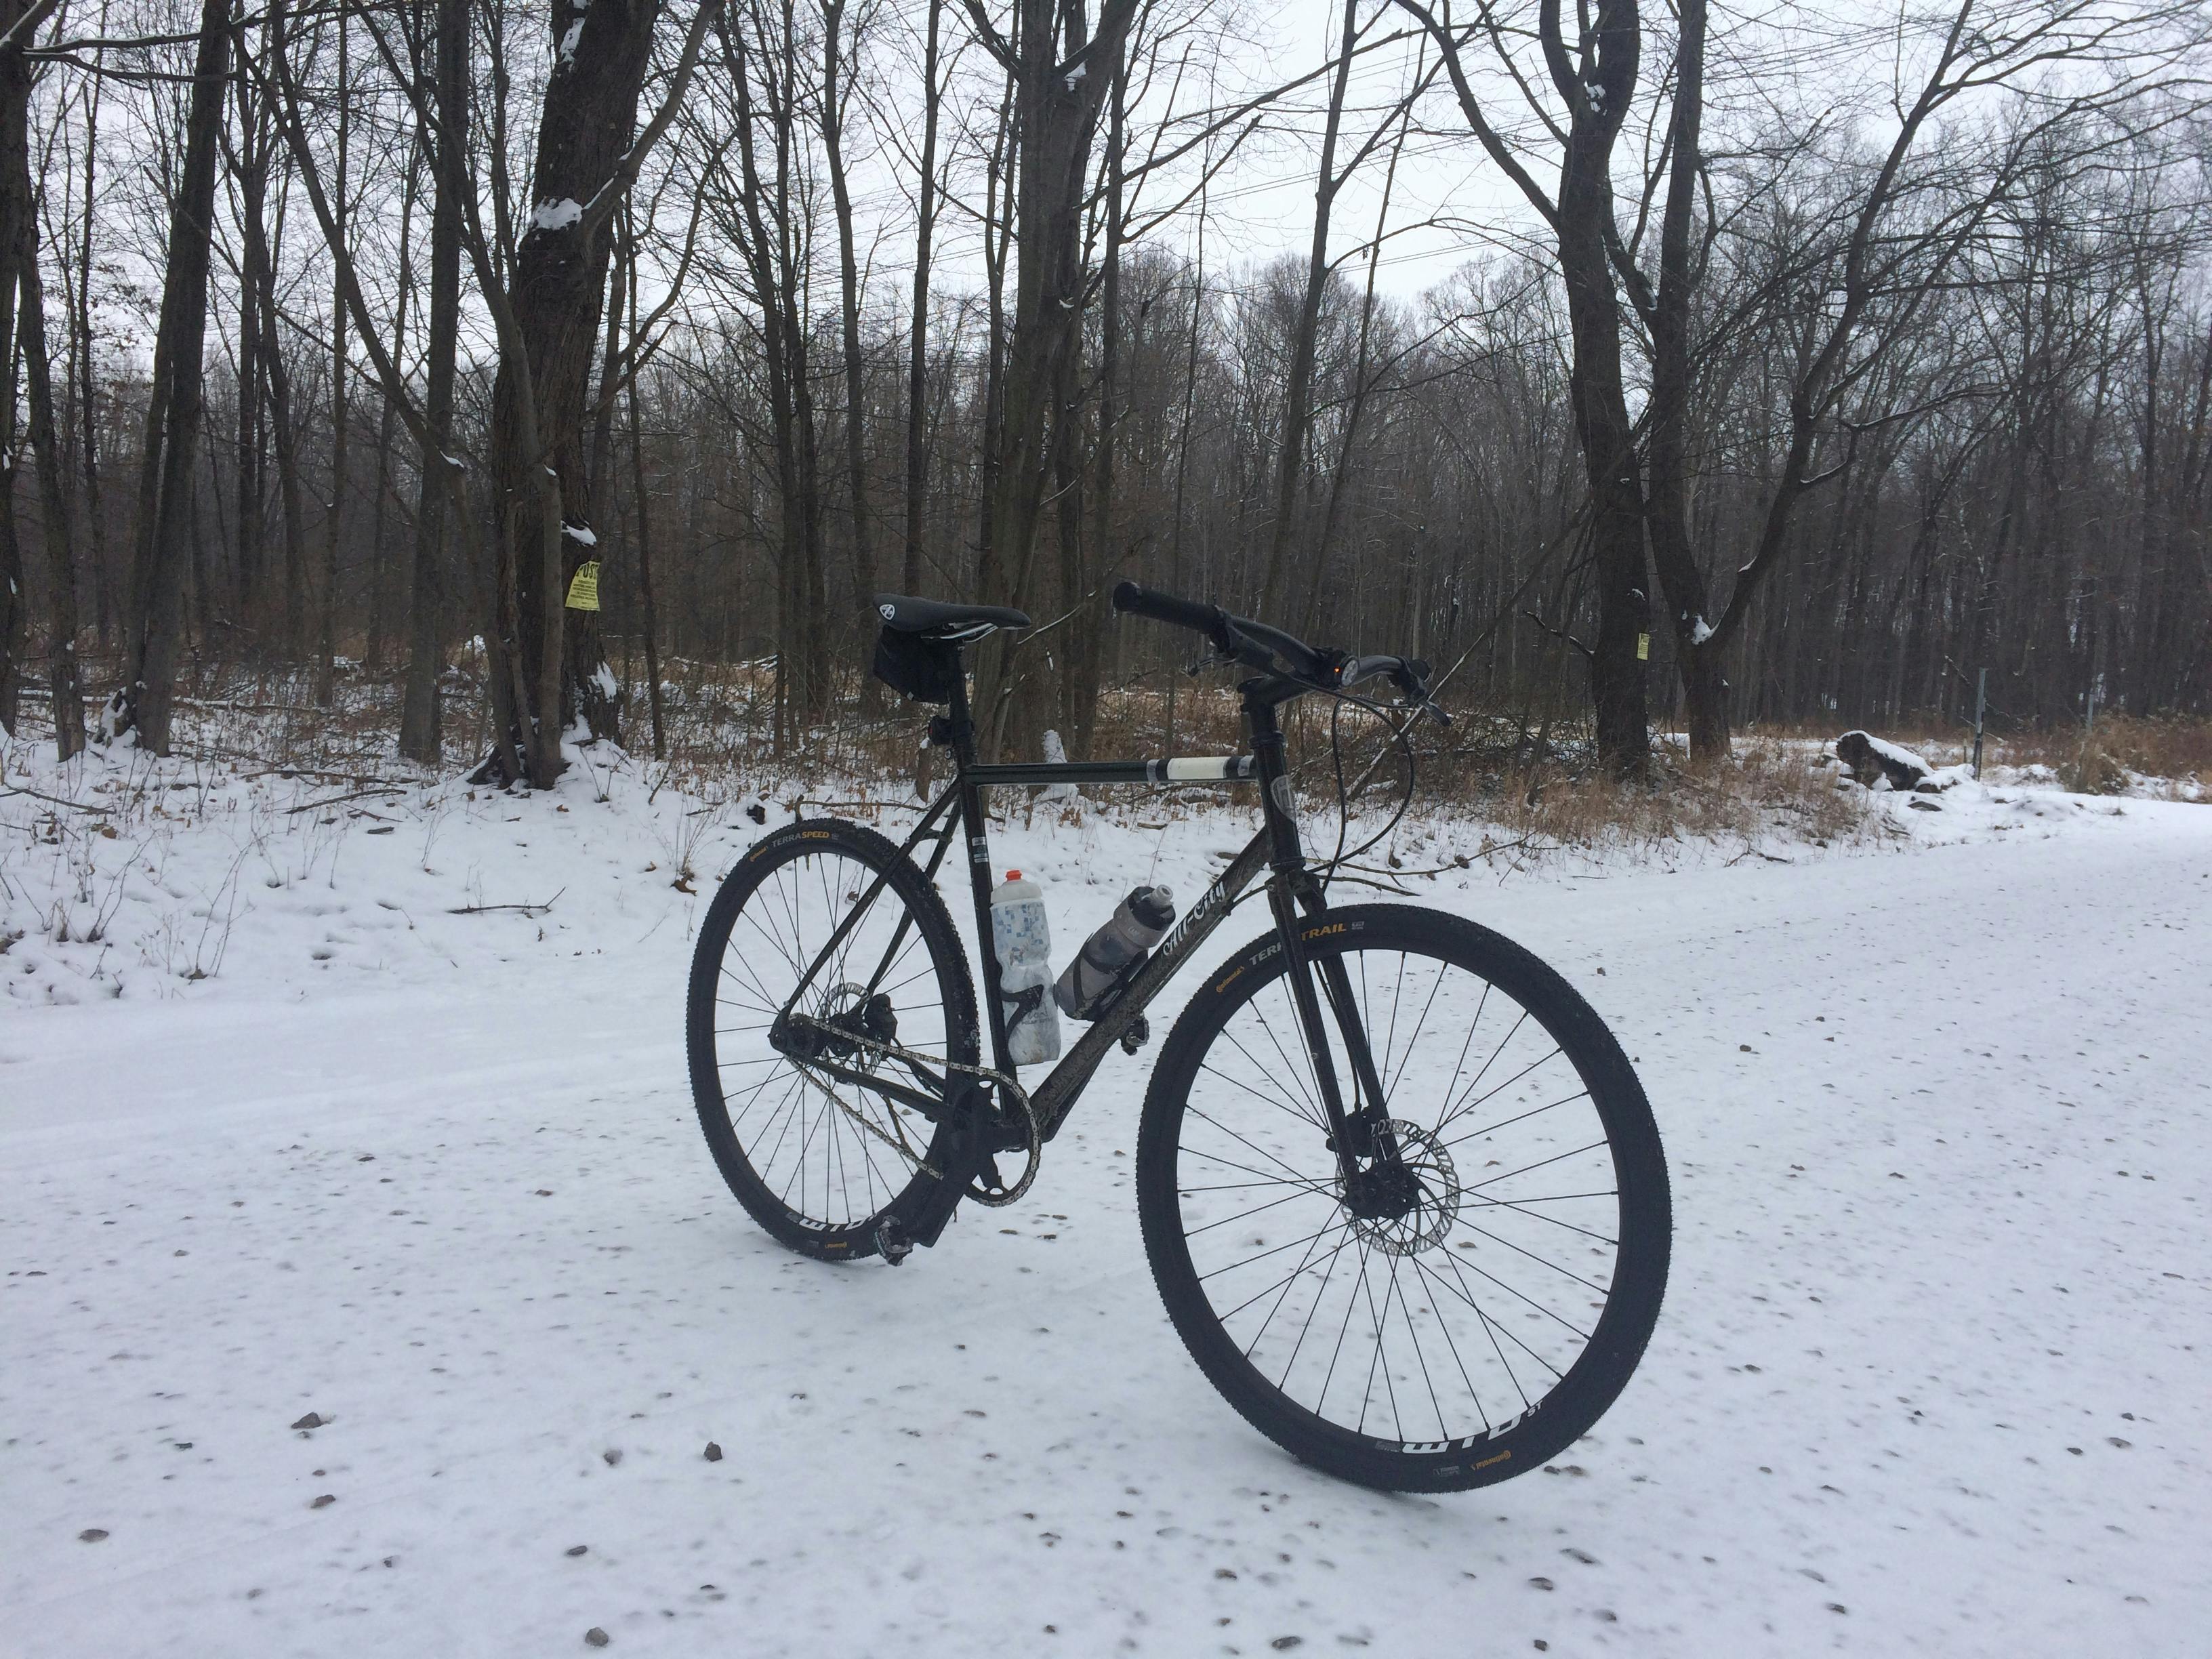 A bike sitting on a snowy trail.